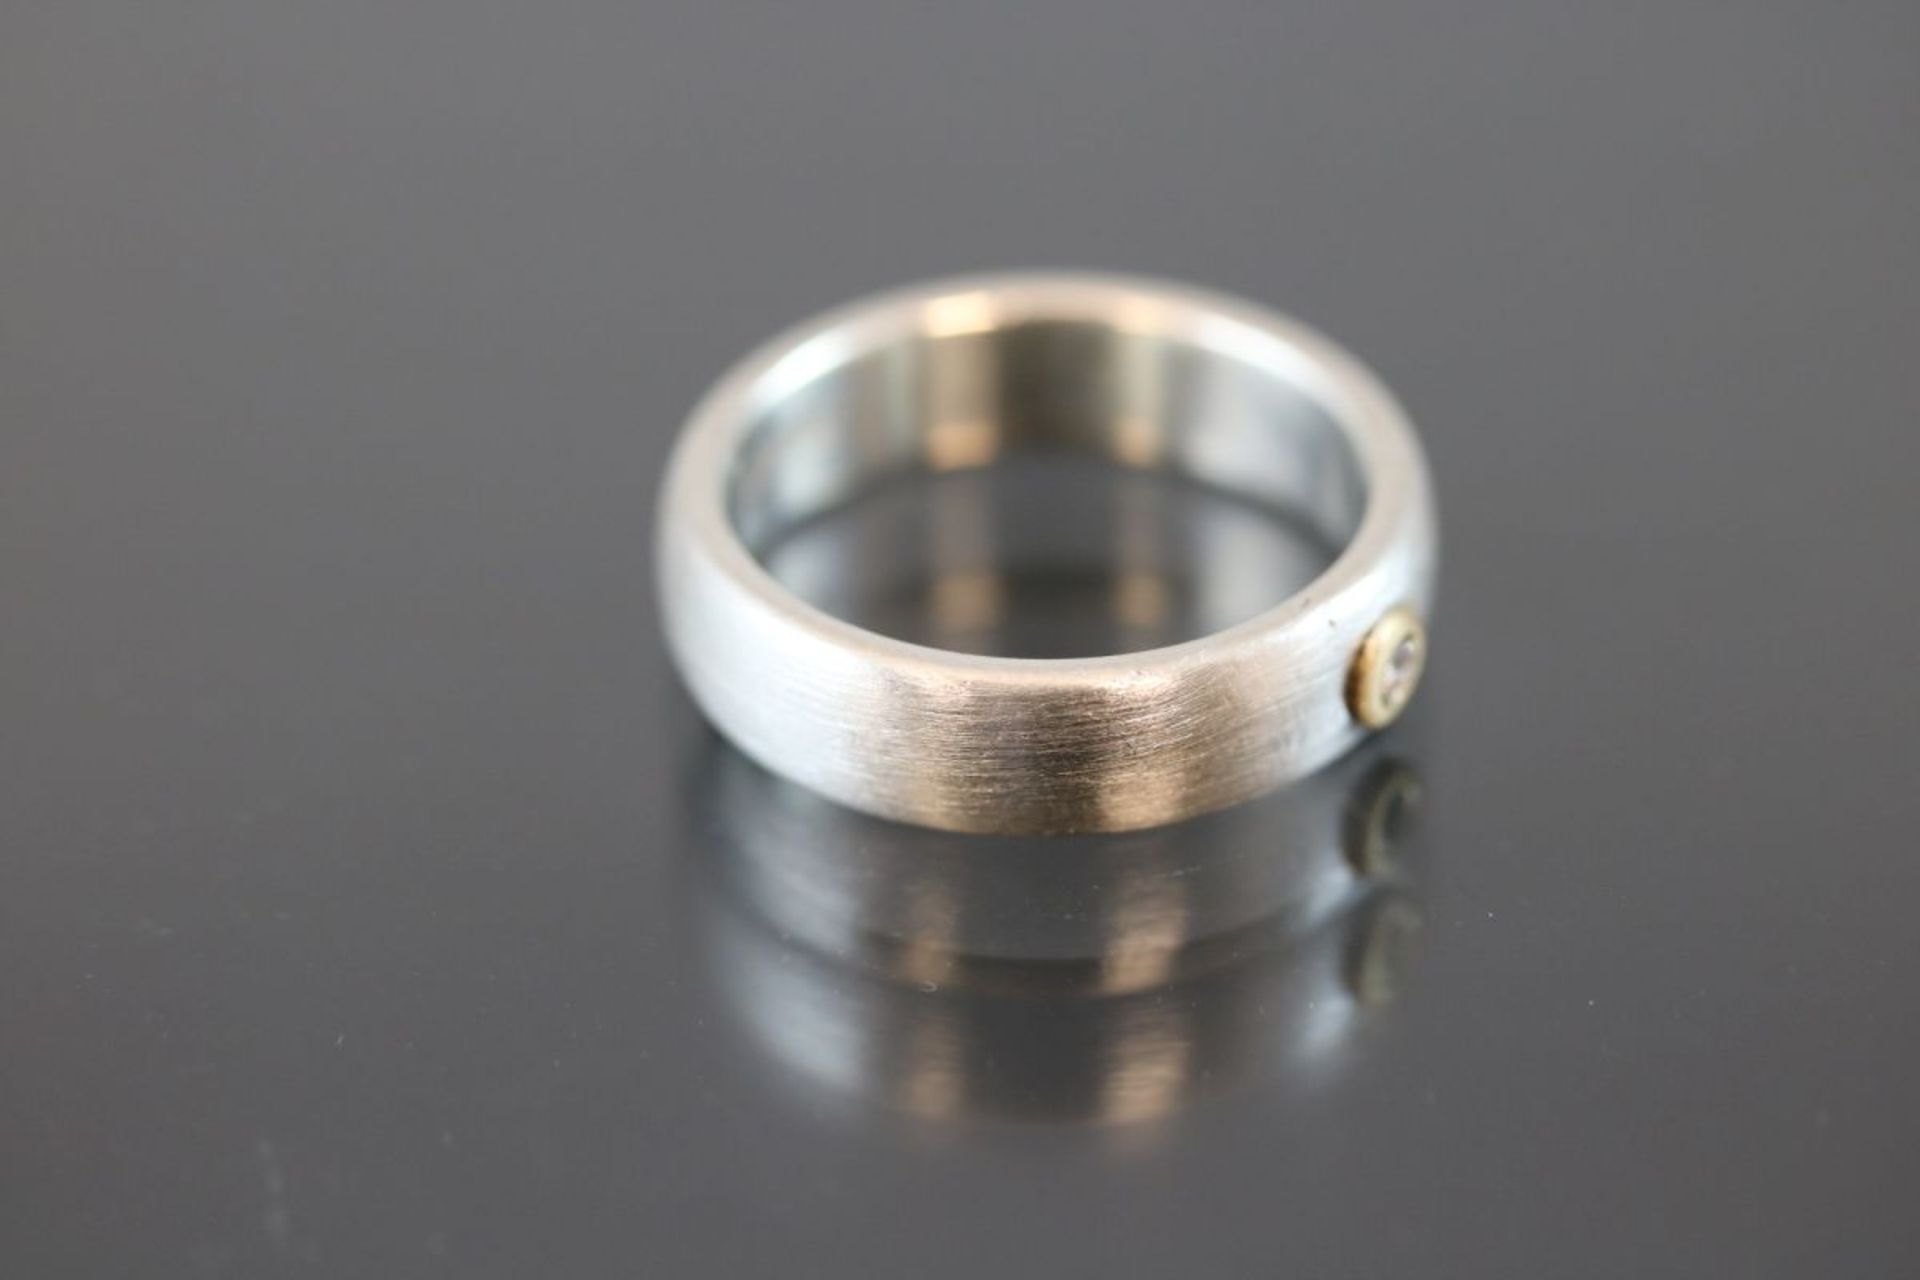 Brillant-Ring, Silber/Gold5,8 Gramm 1 Brillant, 0,02 ct., w/si. Ringgröße: 55Schätzpreis: 450,- - Bild 3 aus 3